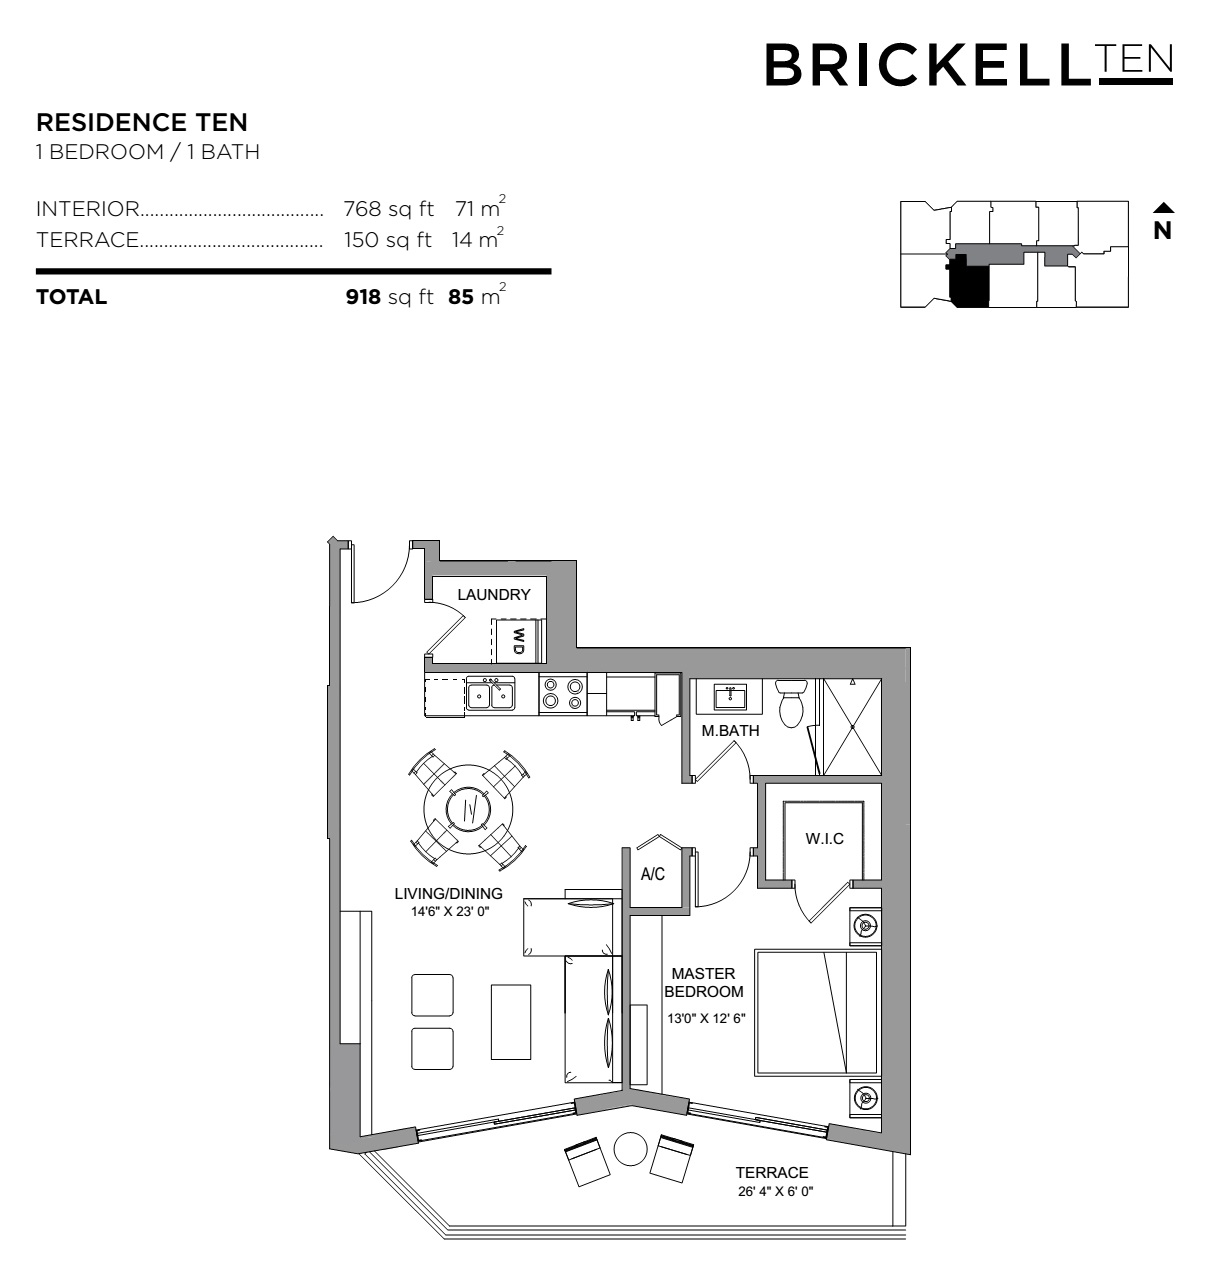 Brickell Ten Residence 10